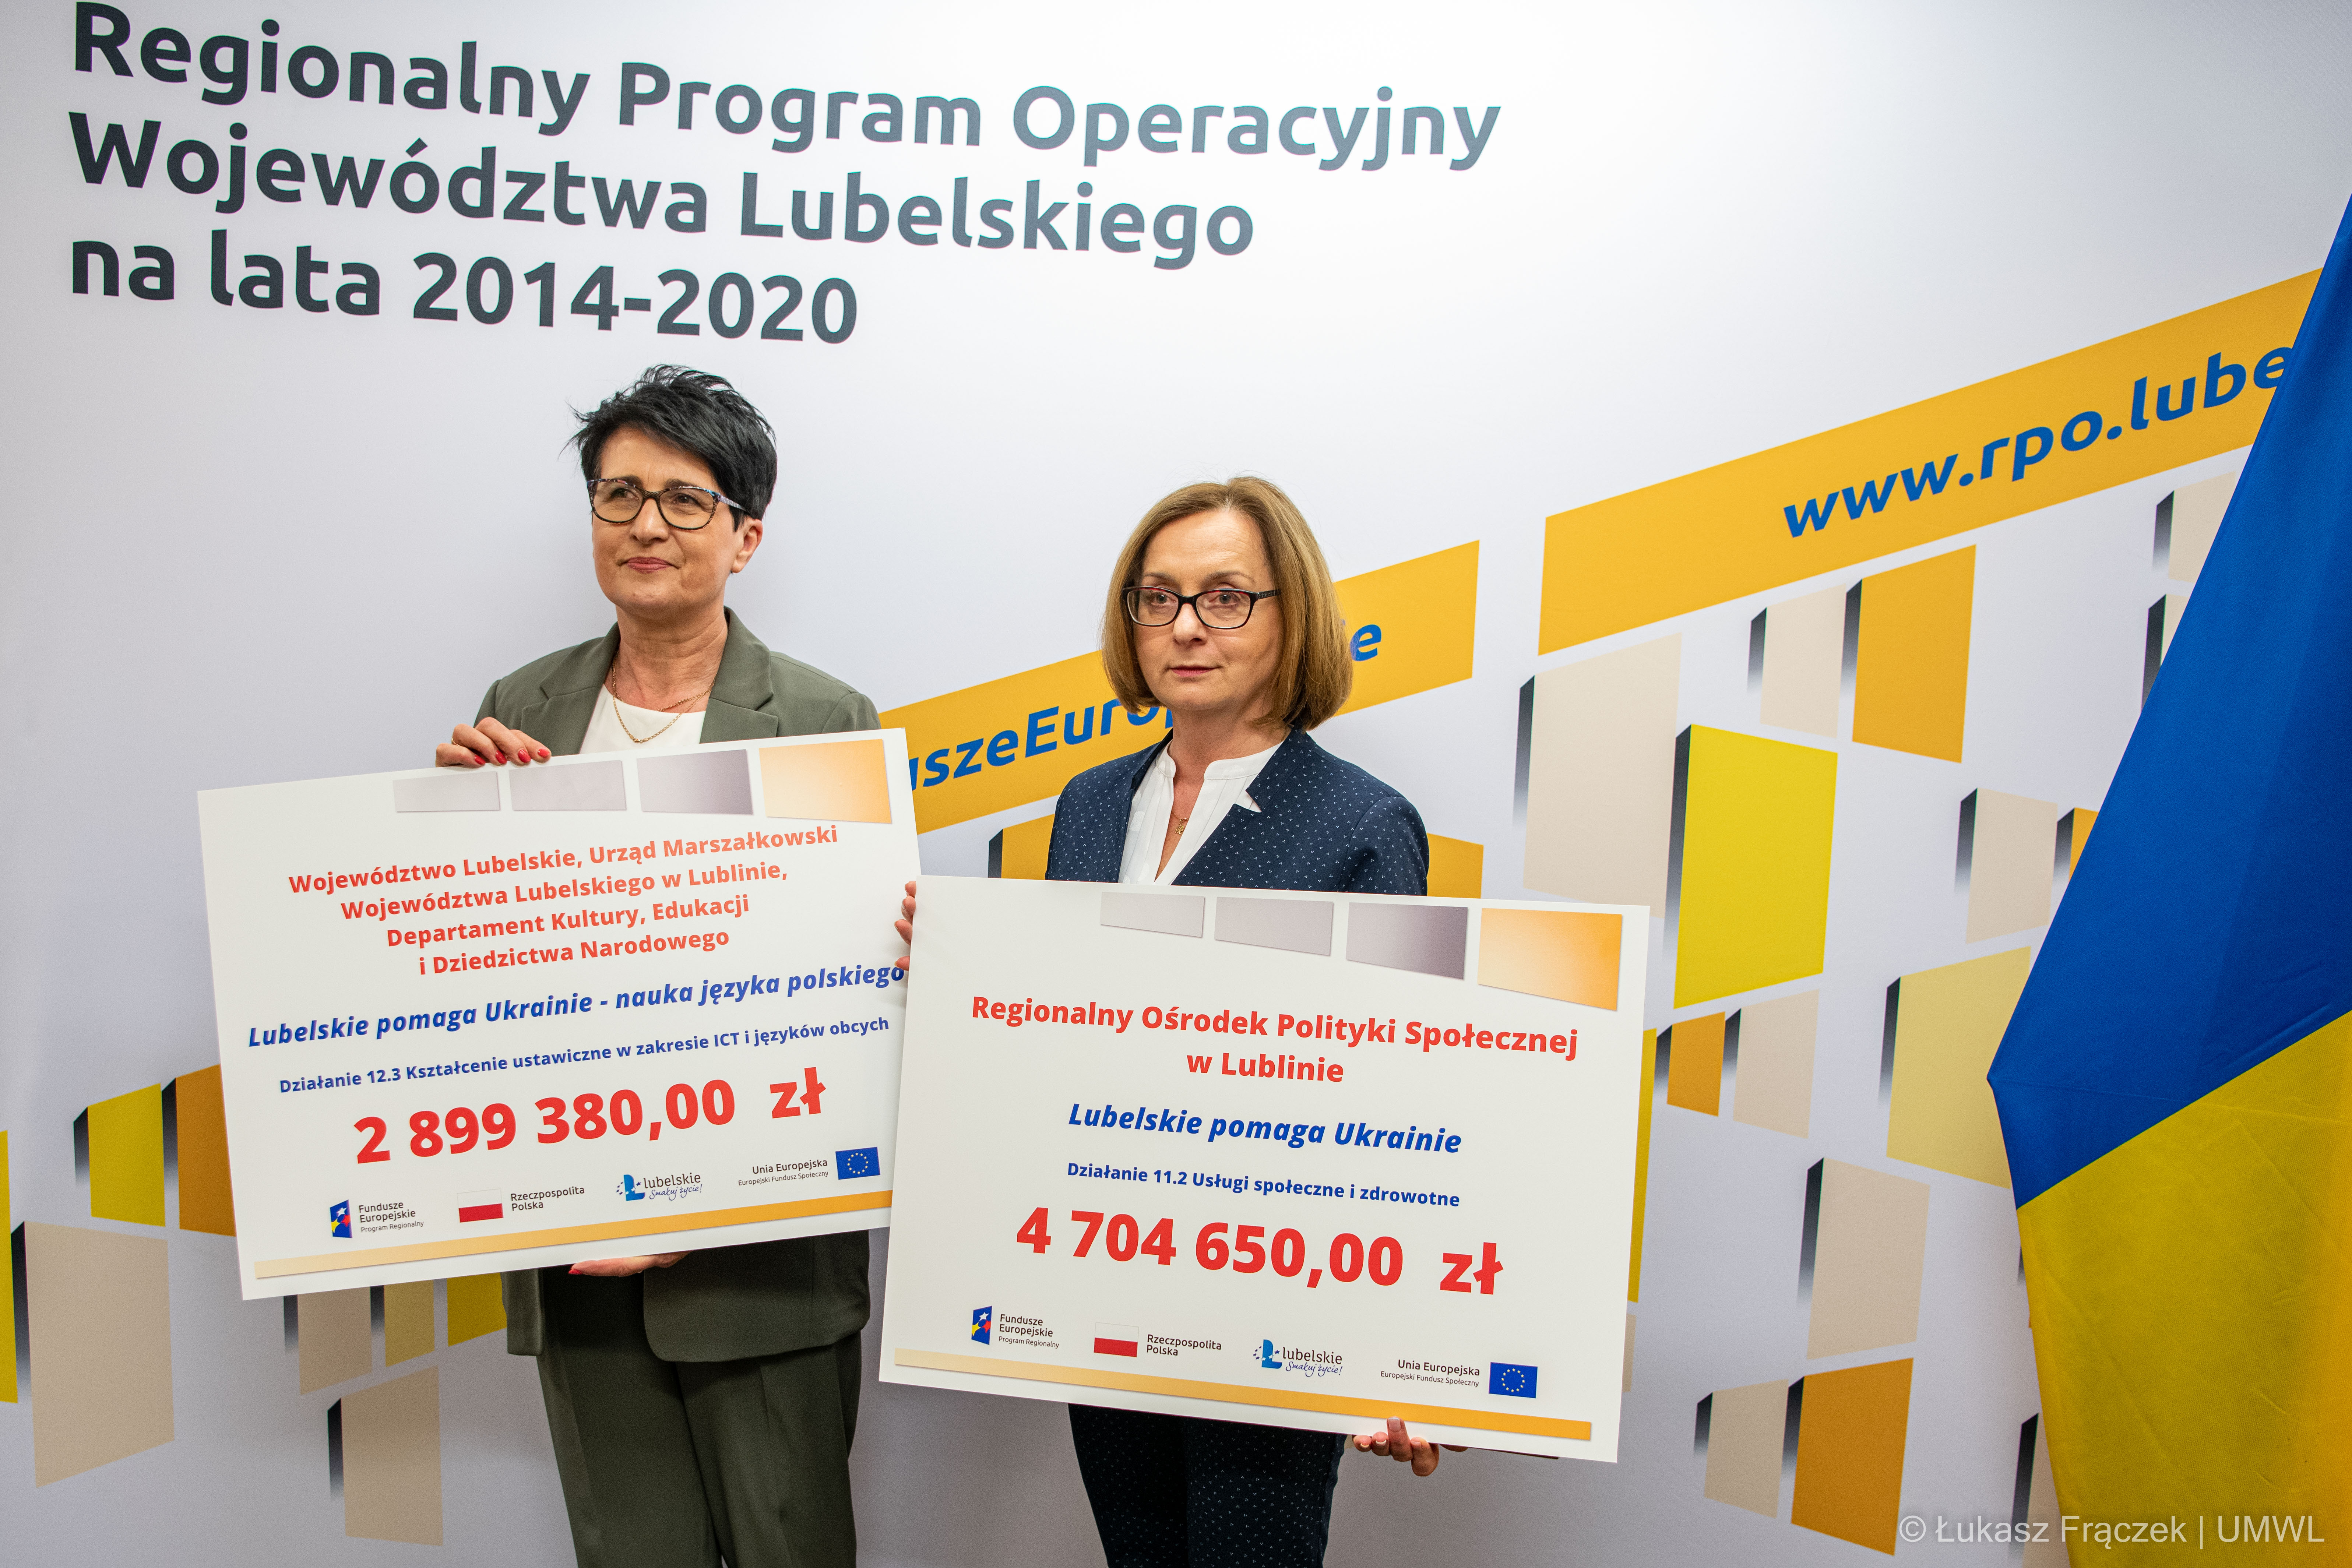 Zarząd Województwa Lubelskiego przeznaczył blisko 6,5 mln zł z funduszy unijnych na wsparcie uchodźców